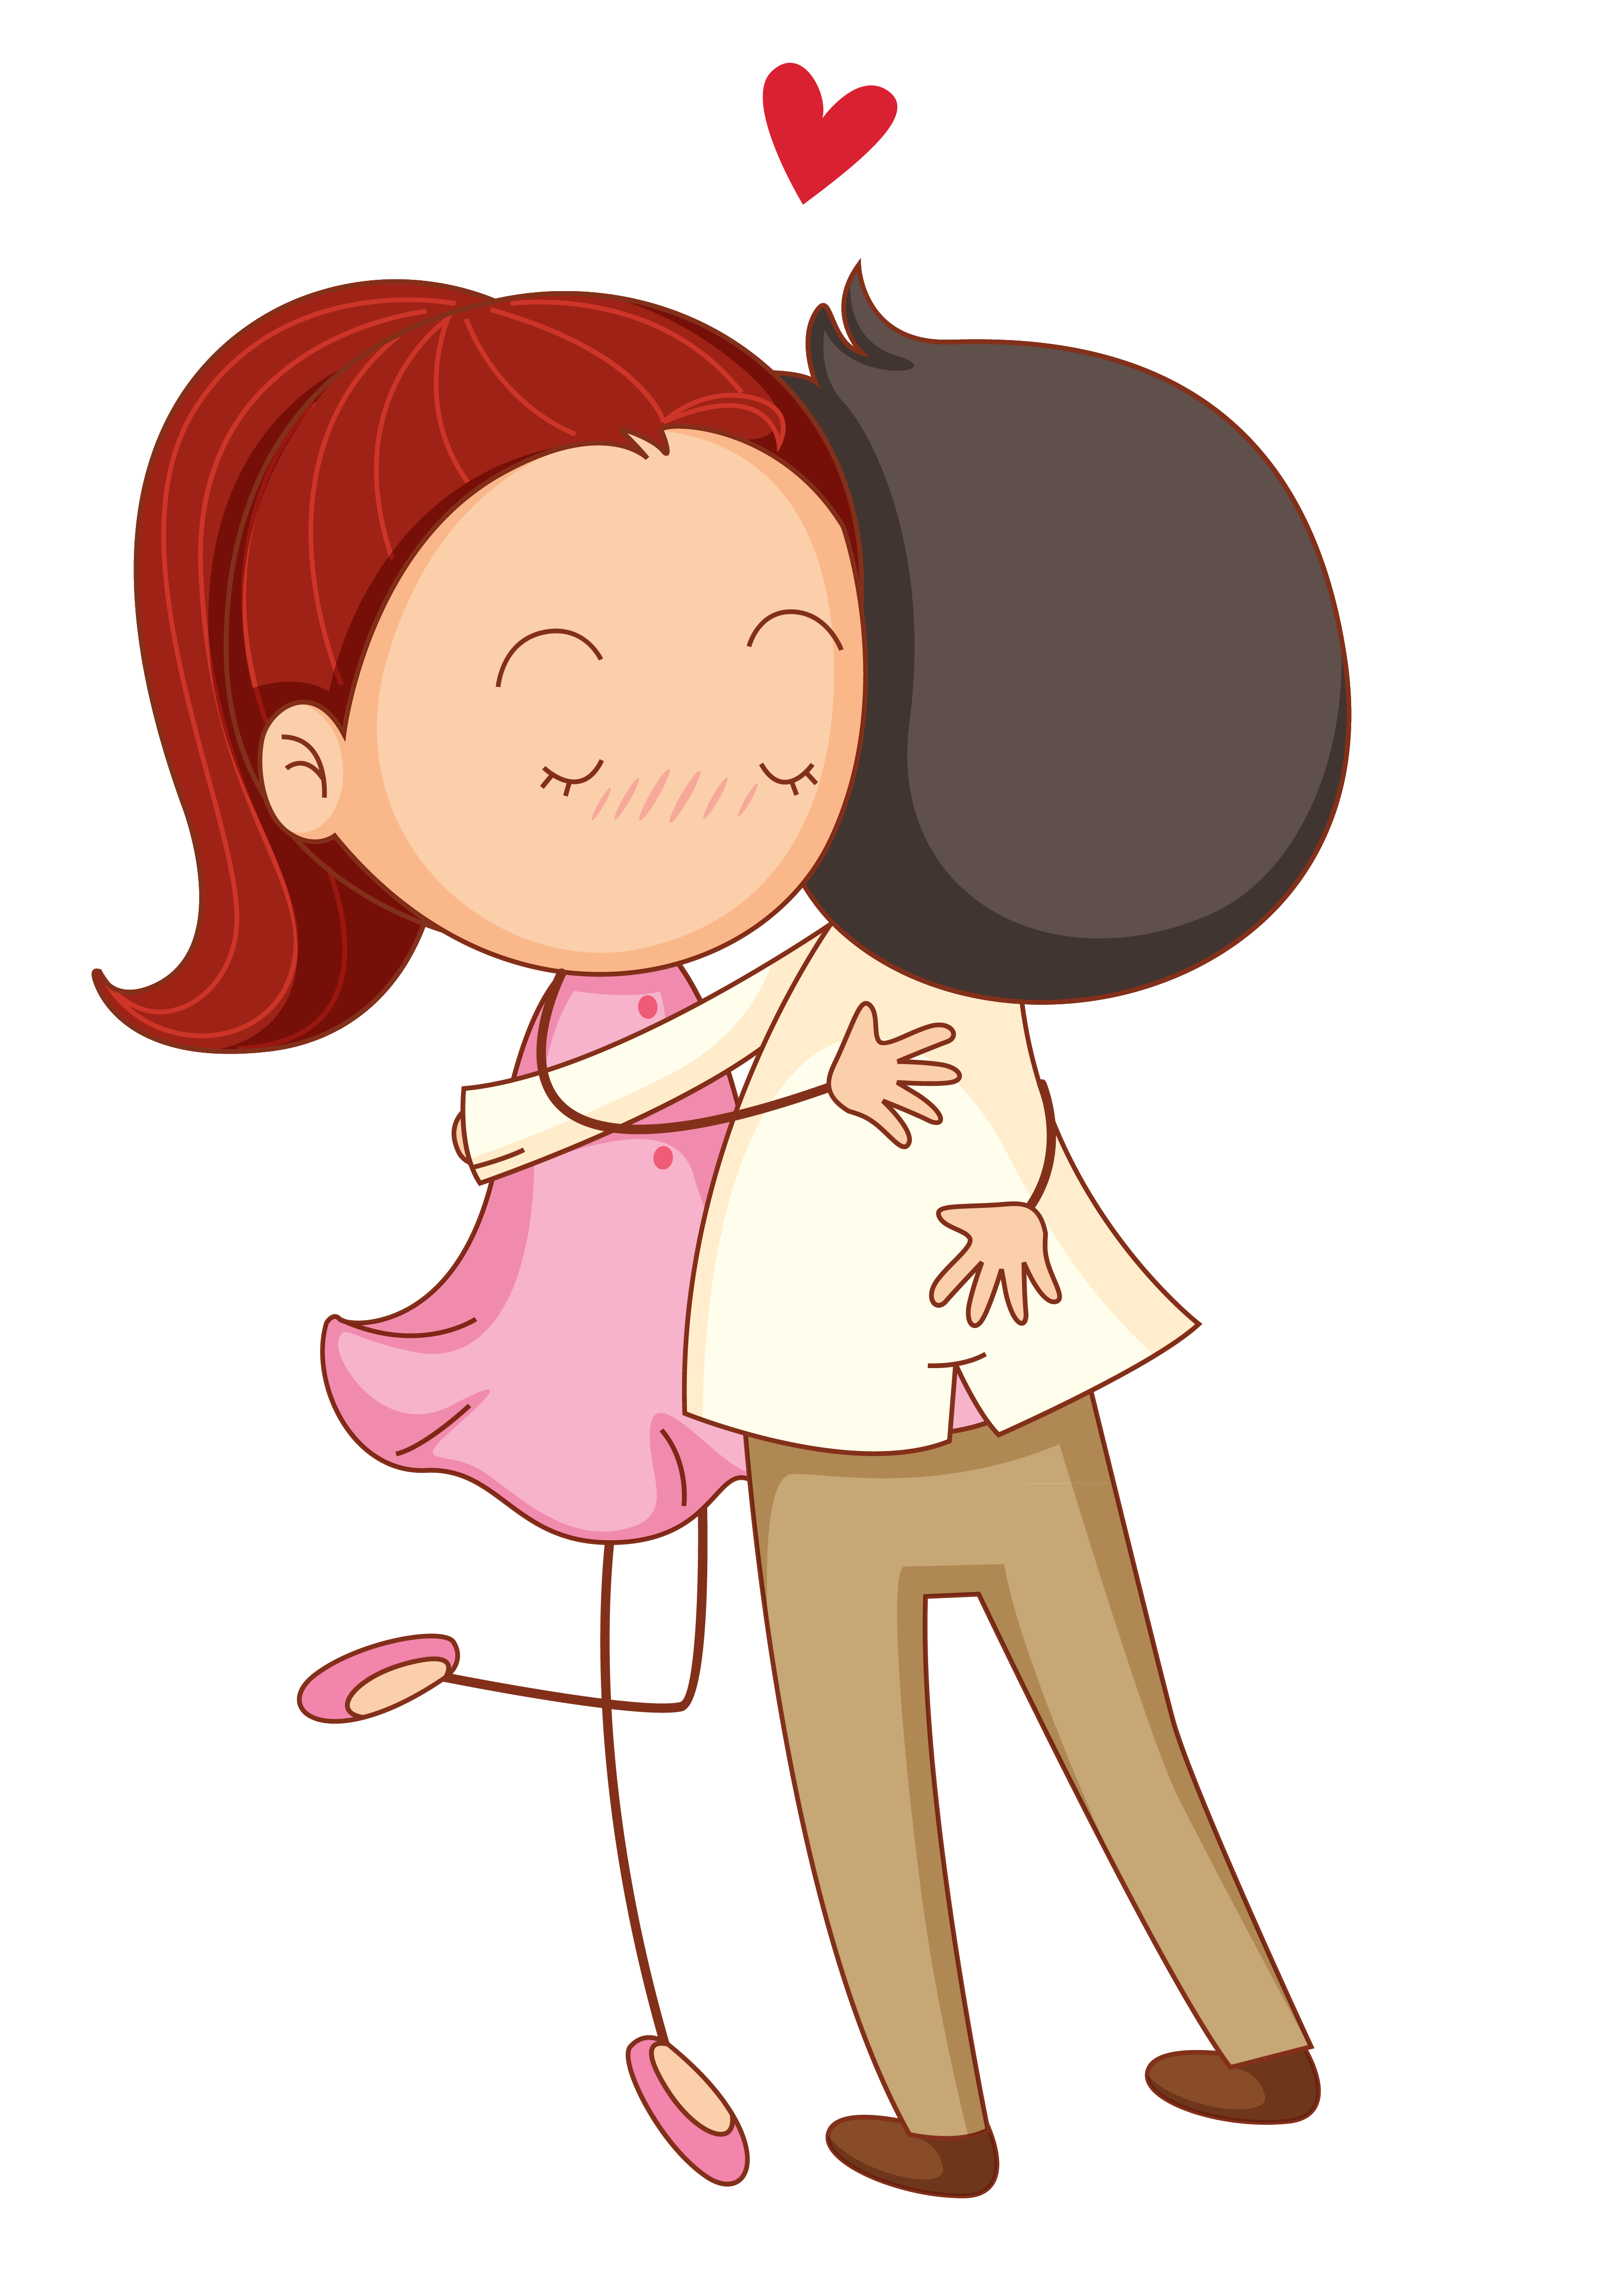 Hug clipart lover hug. Love cartoon romance couple